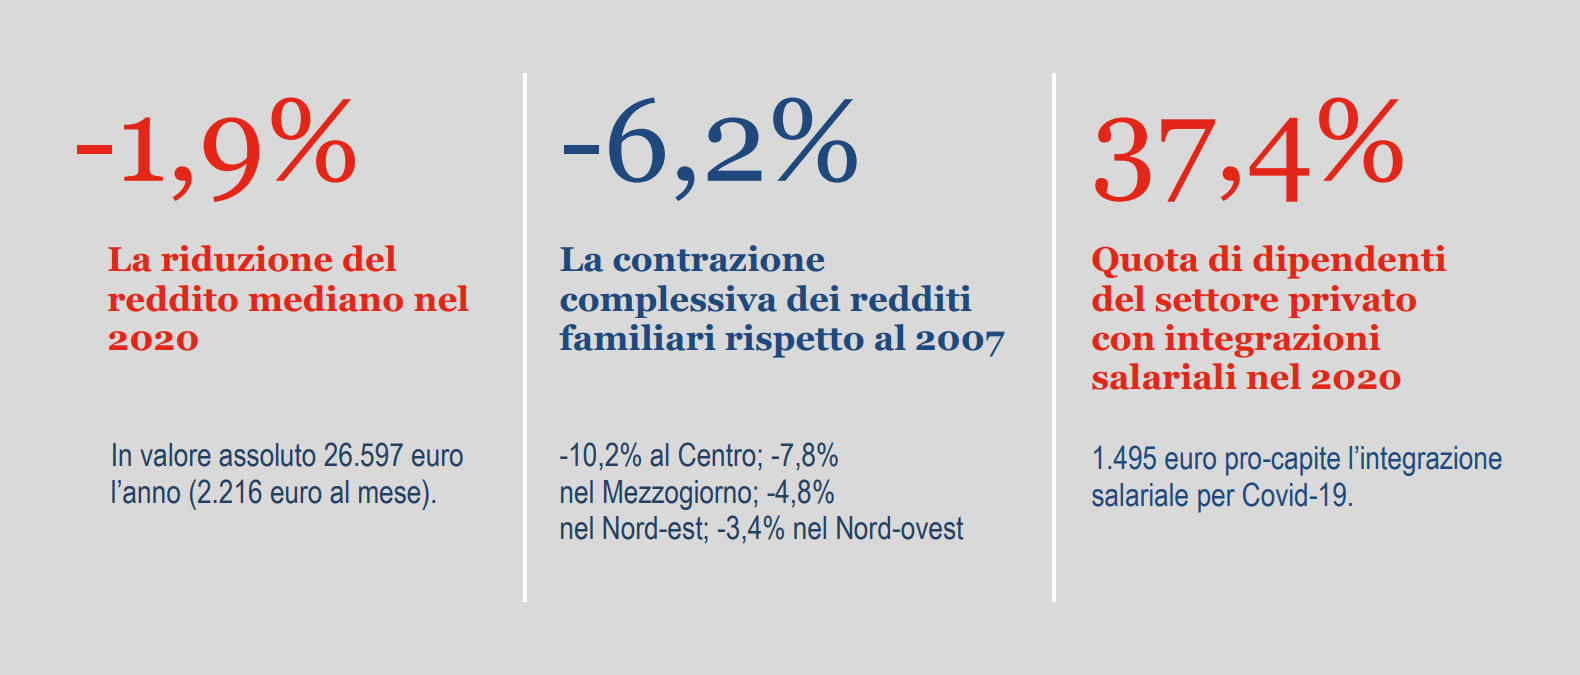 Istat: in Italia non cala il rischio di povertà o esclusione sociale